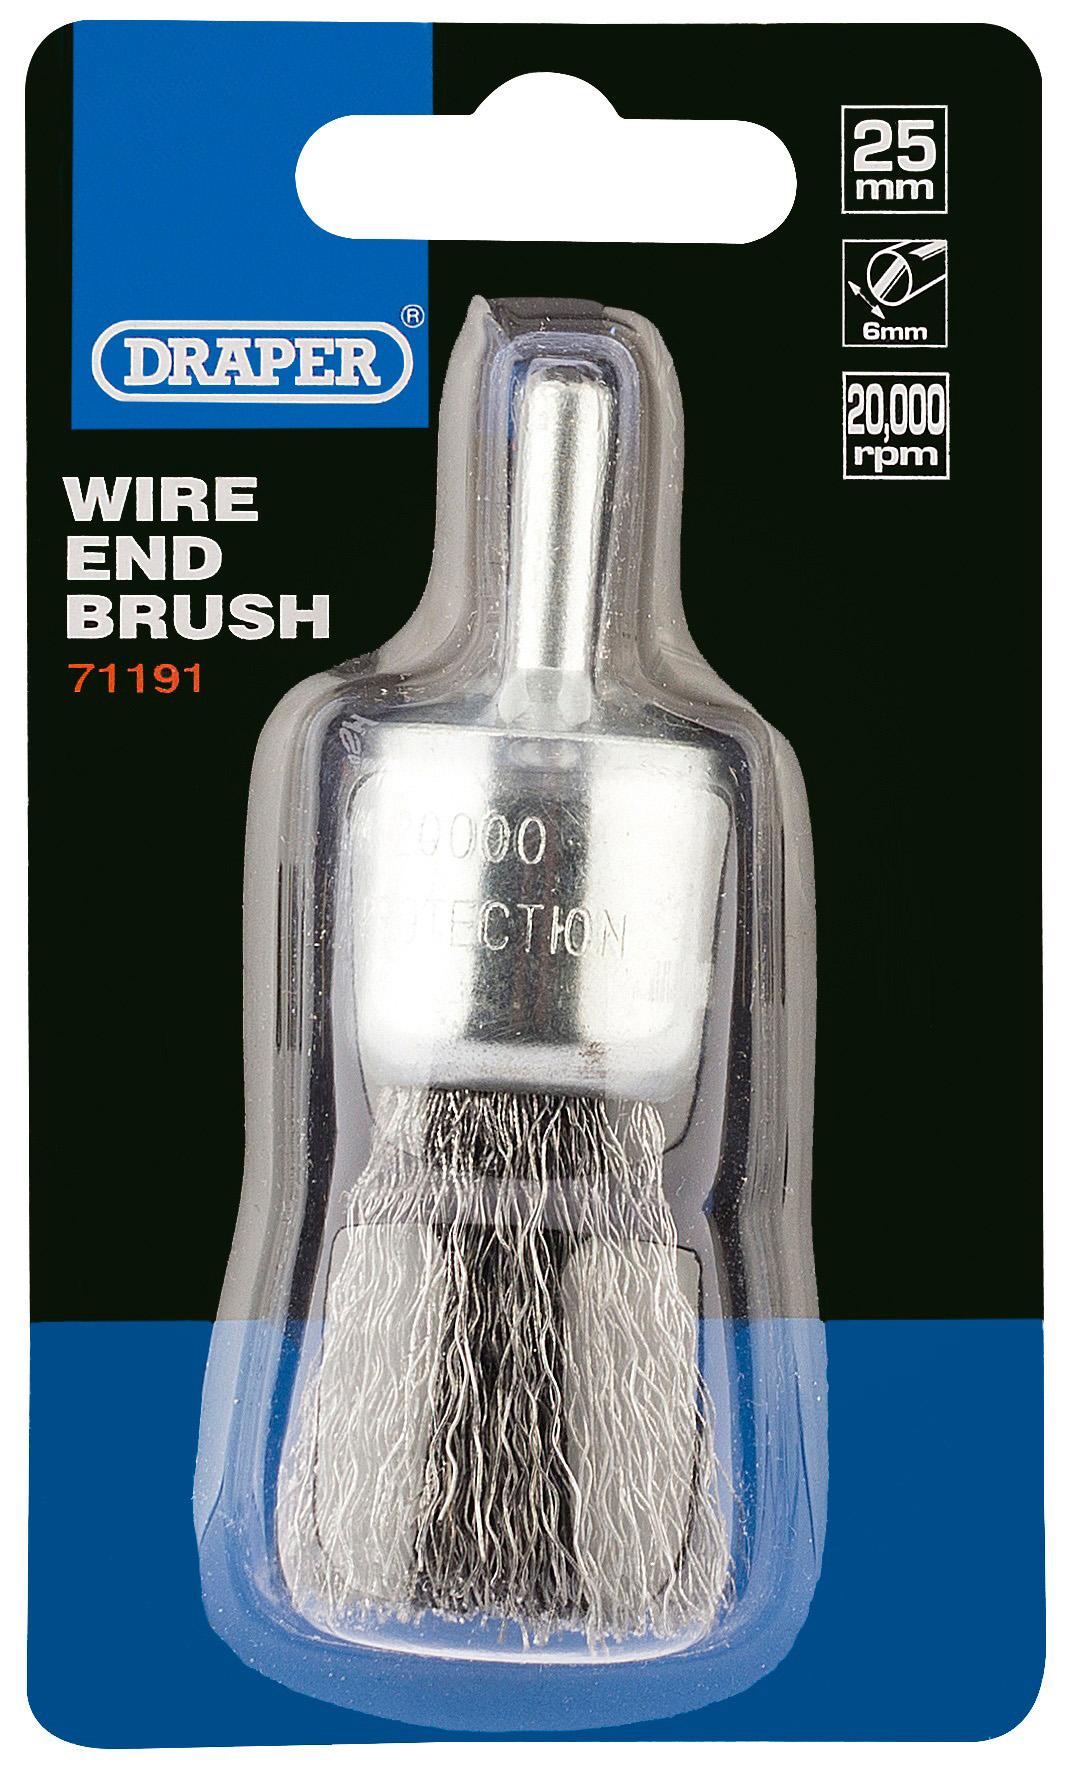 Draper 25Mm Wire End Brush